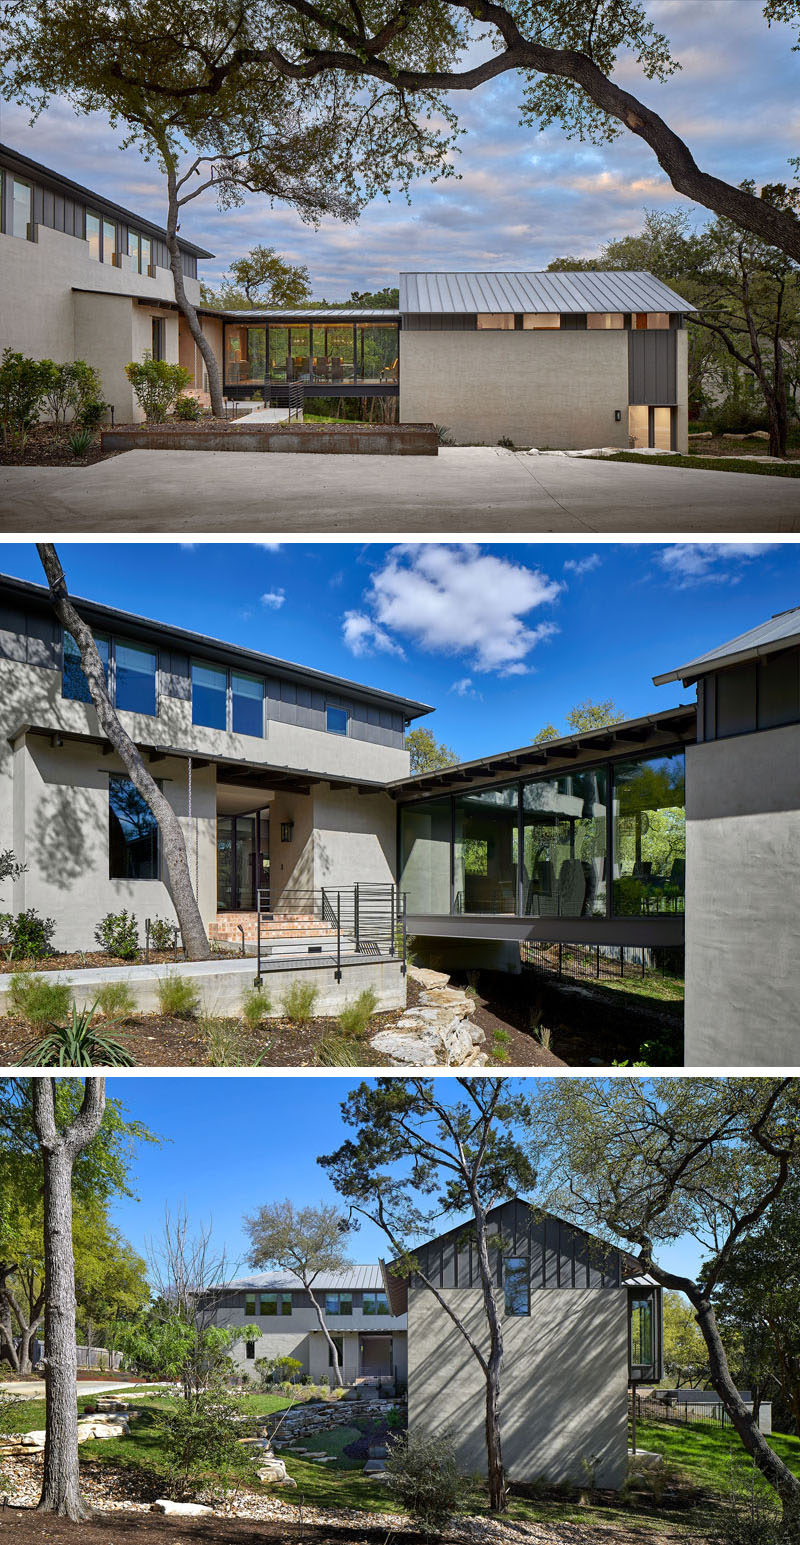  Компания Furman + Keil Architects спроектировала реконструкцию и дополнение к дому в Остине, штат Техас, который использовался загородным кирпичным домом эпохи 80-х годов. #ModernHouse # Архитектура 